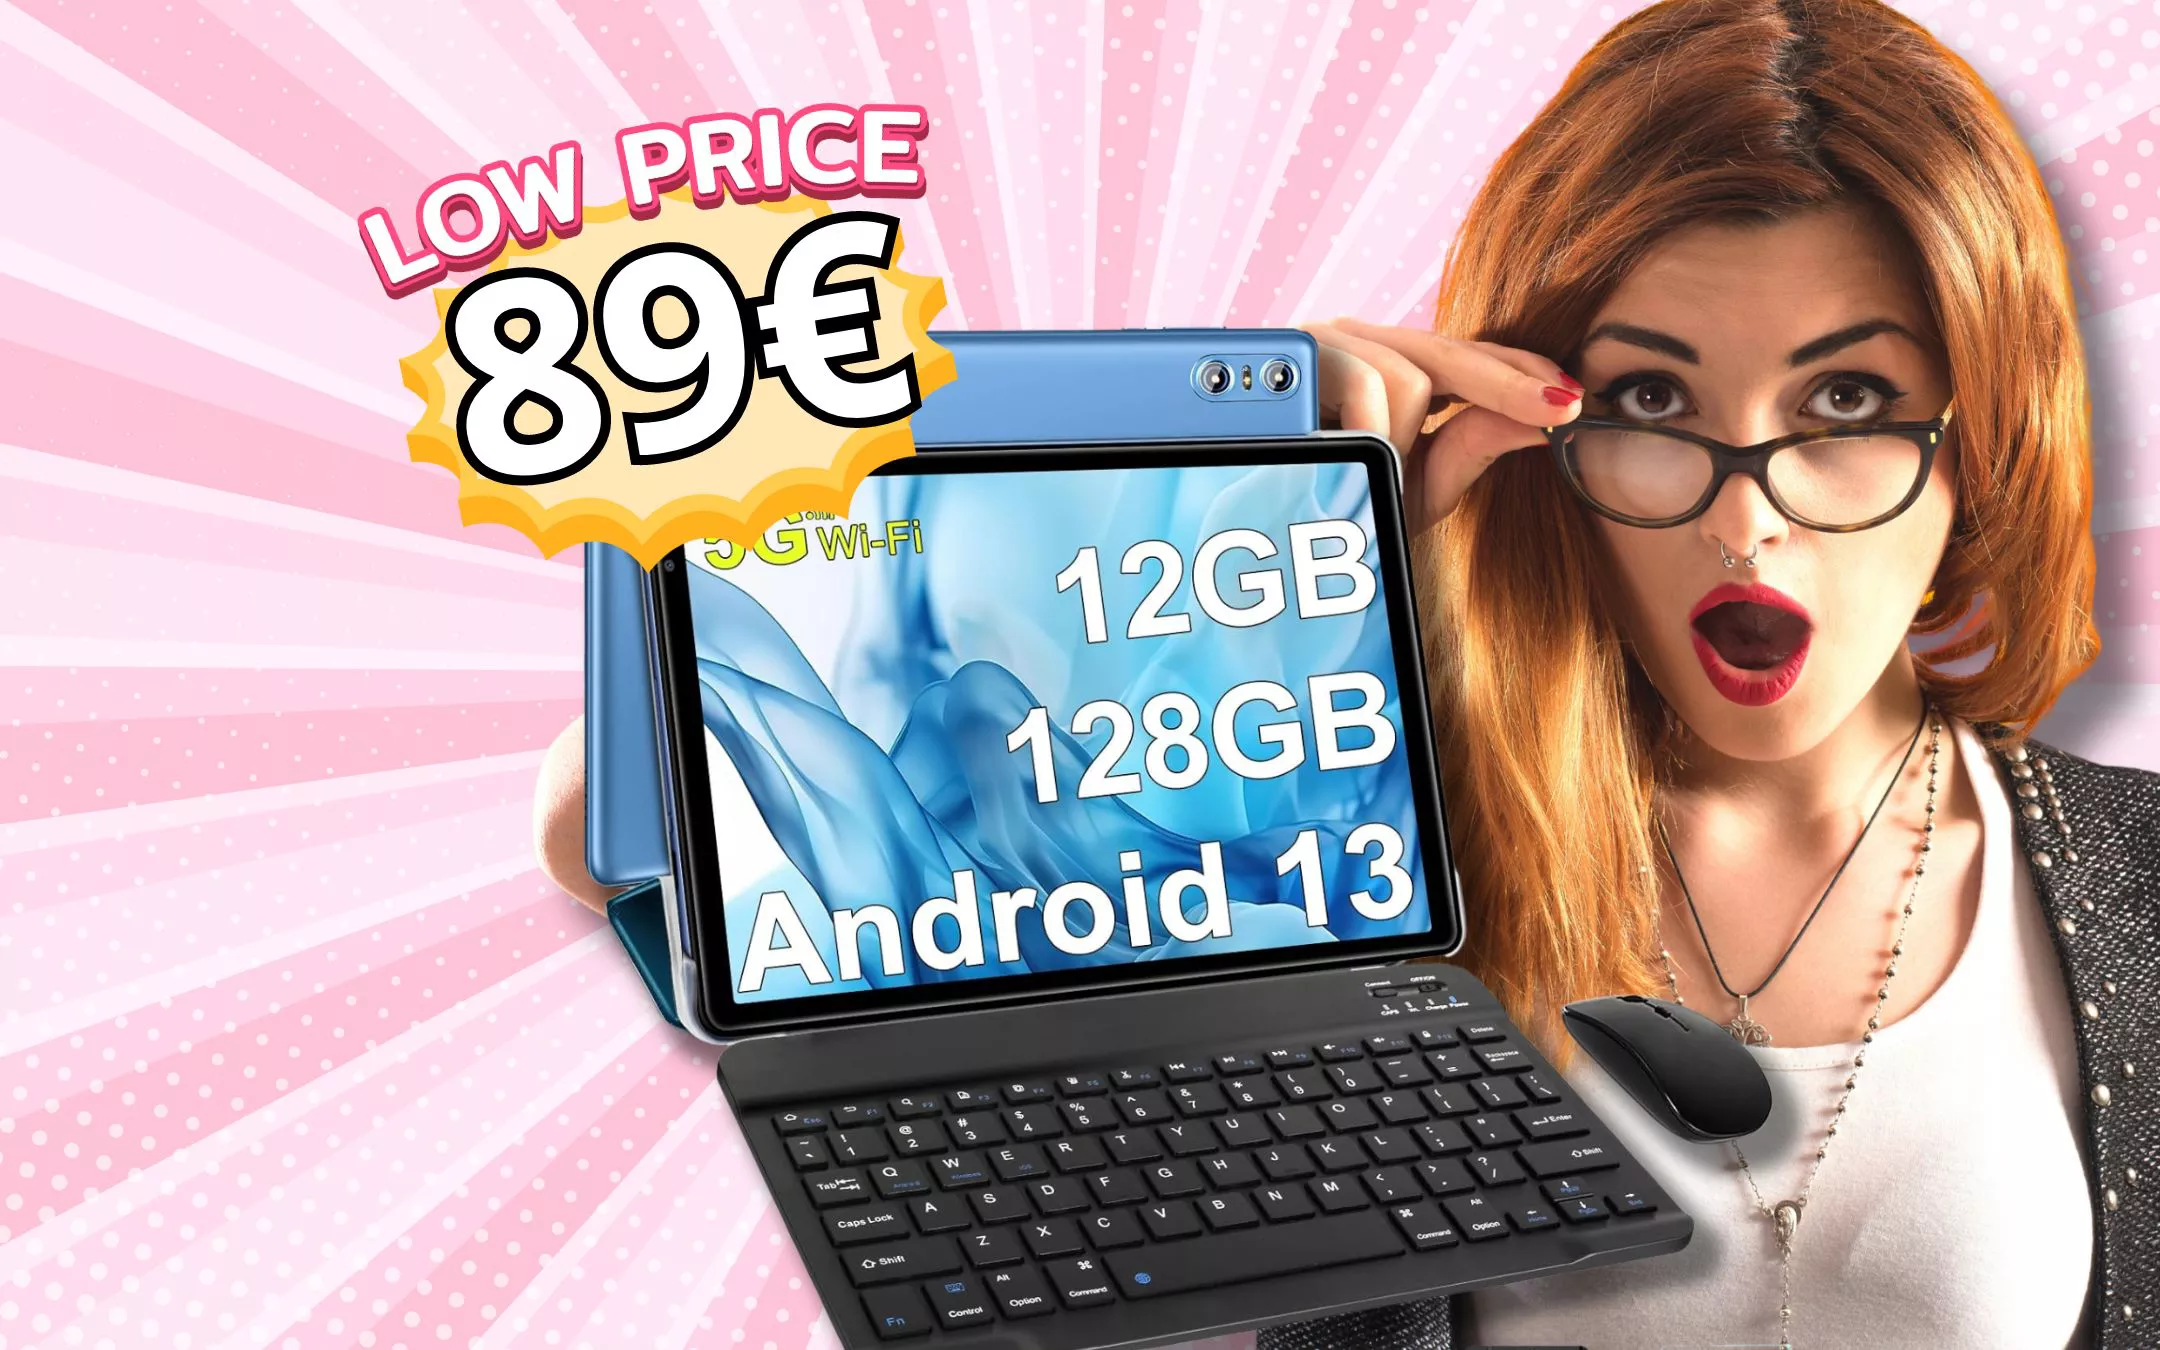 SOLO 89€ per Tablet Android che ti REGALA tastiera e mouse NEL